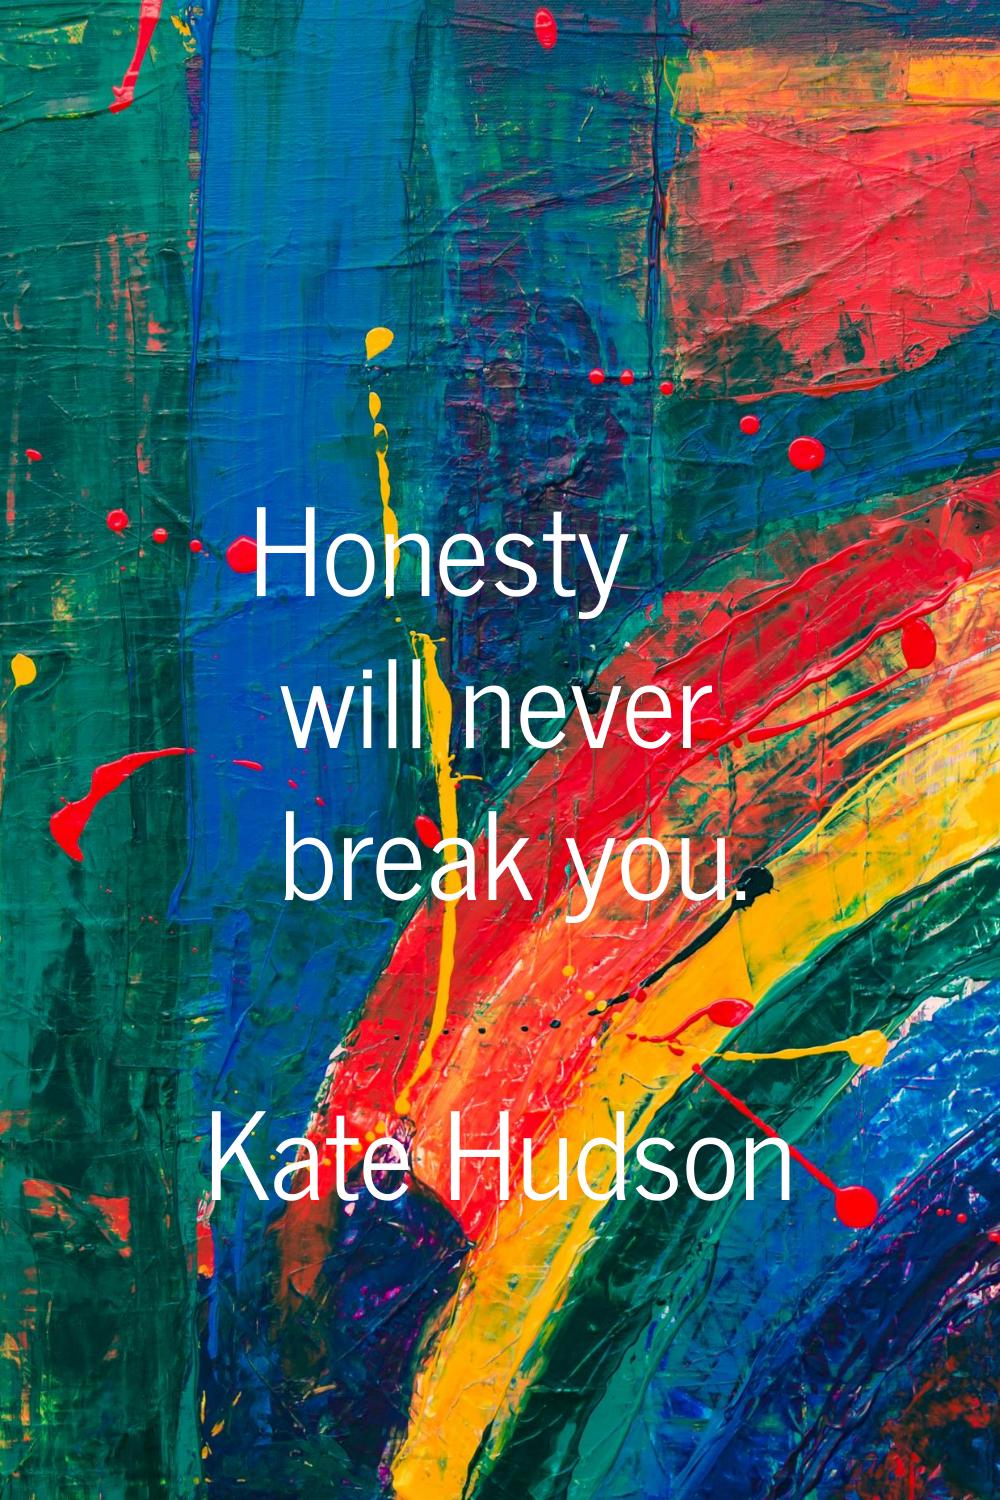 Honesty will never break you.